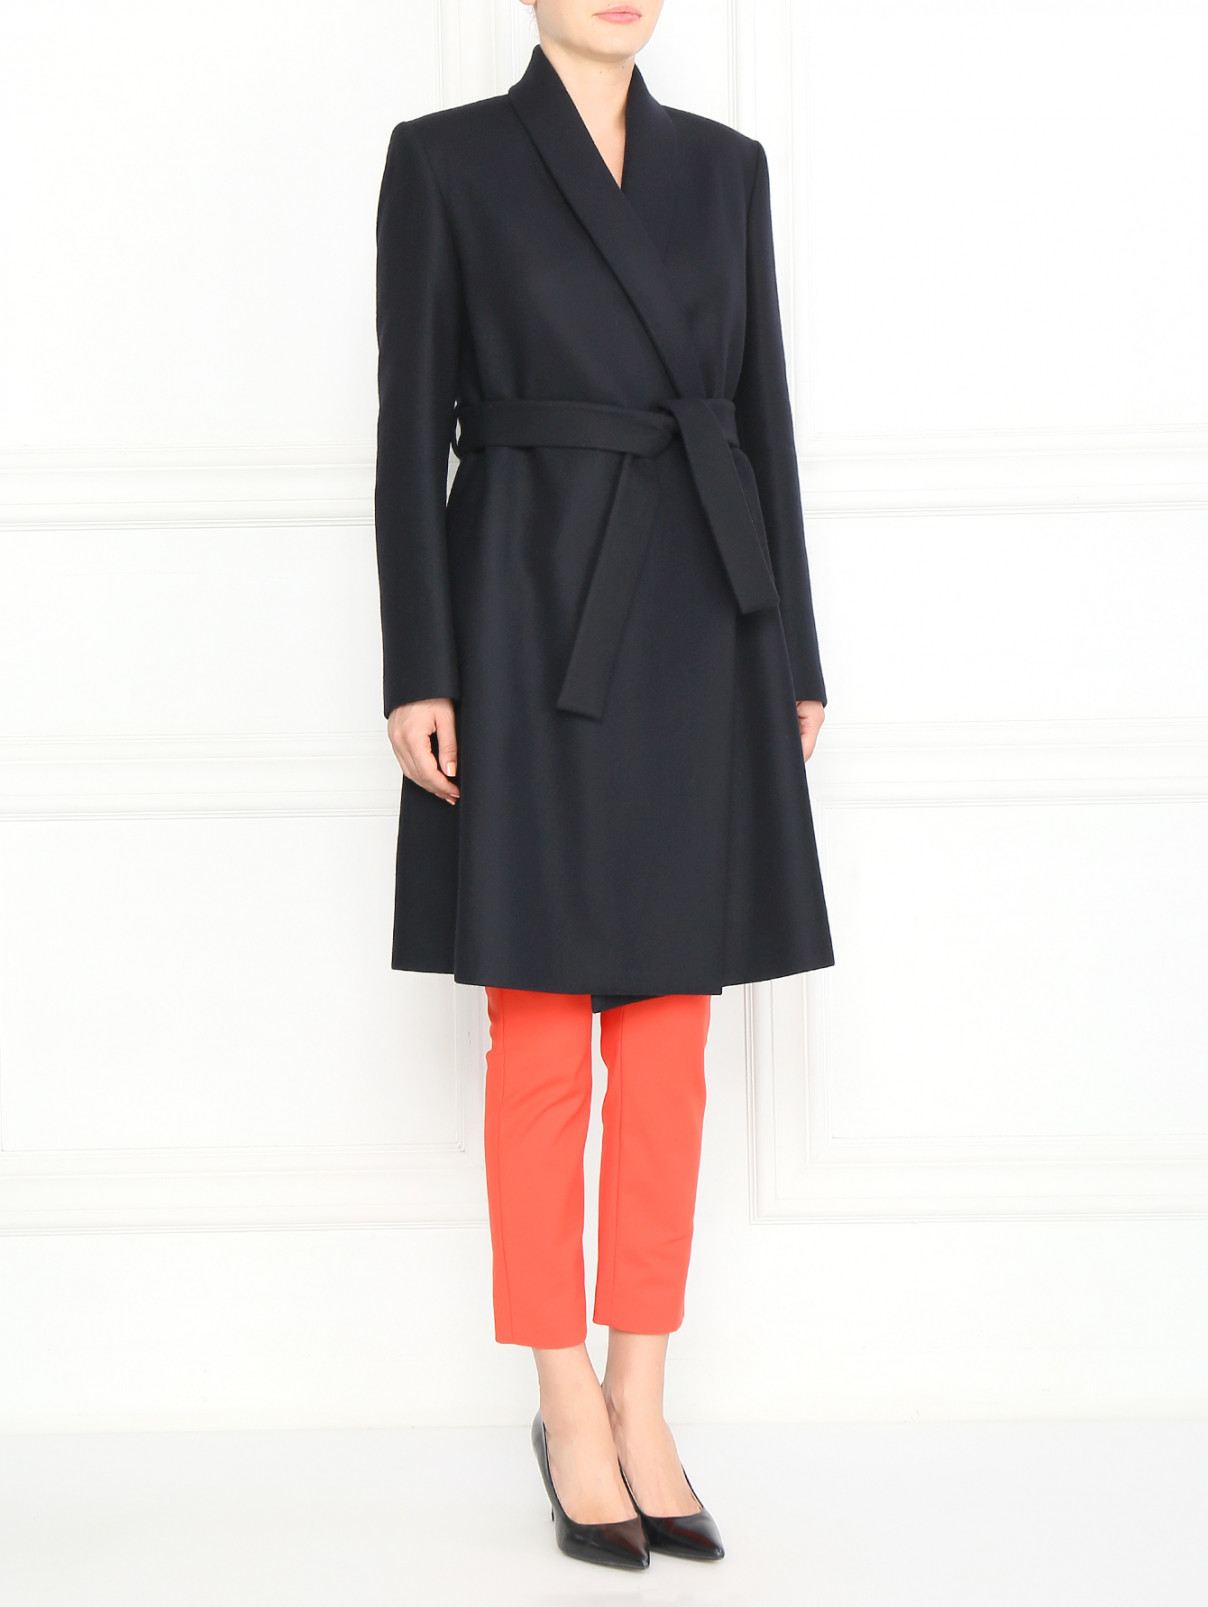 Пальто из кашемира Ballantyne  –  Модель Общий вид  – Цвет:  Черный